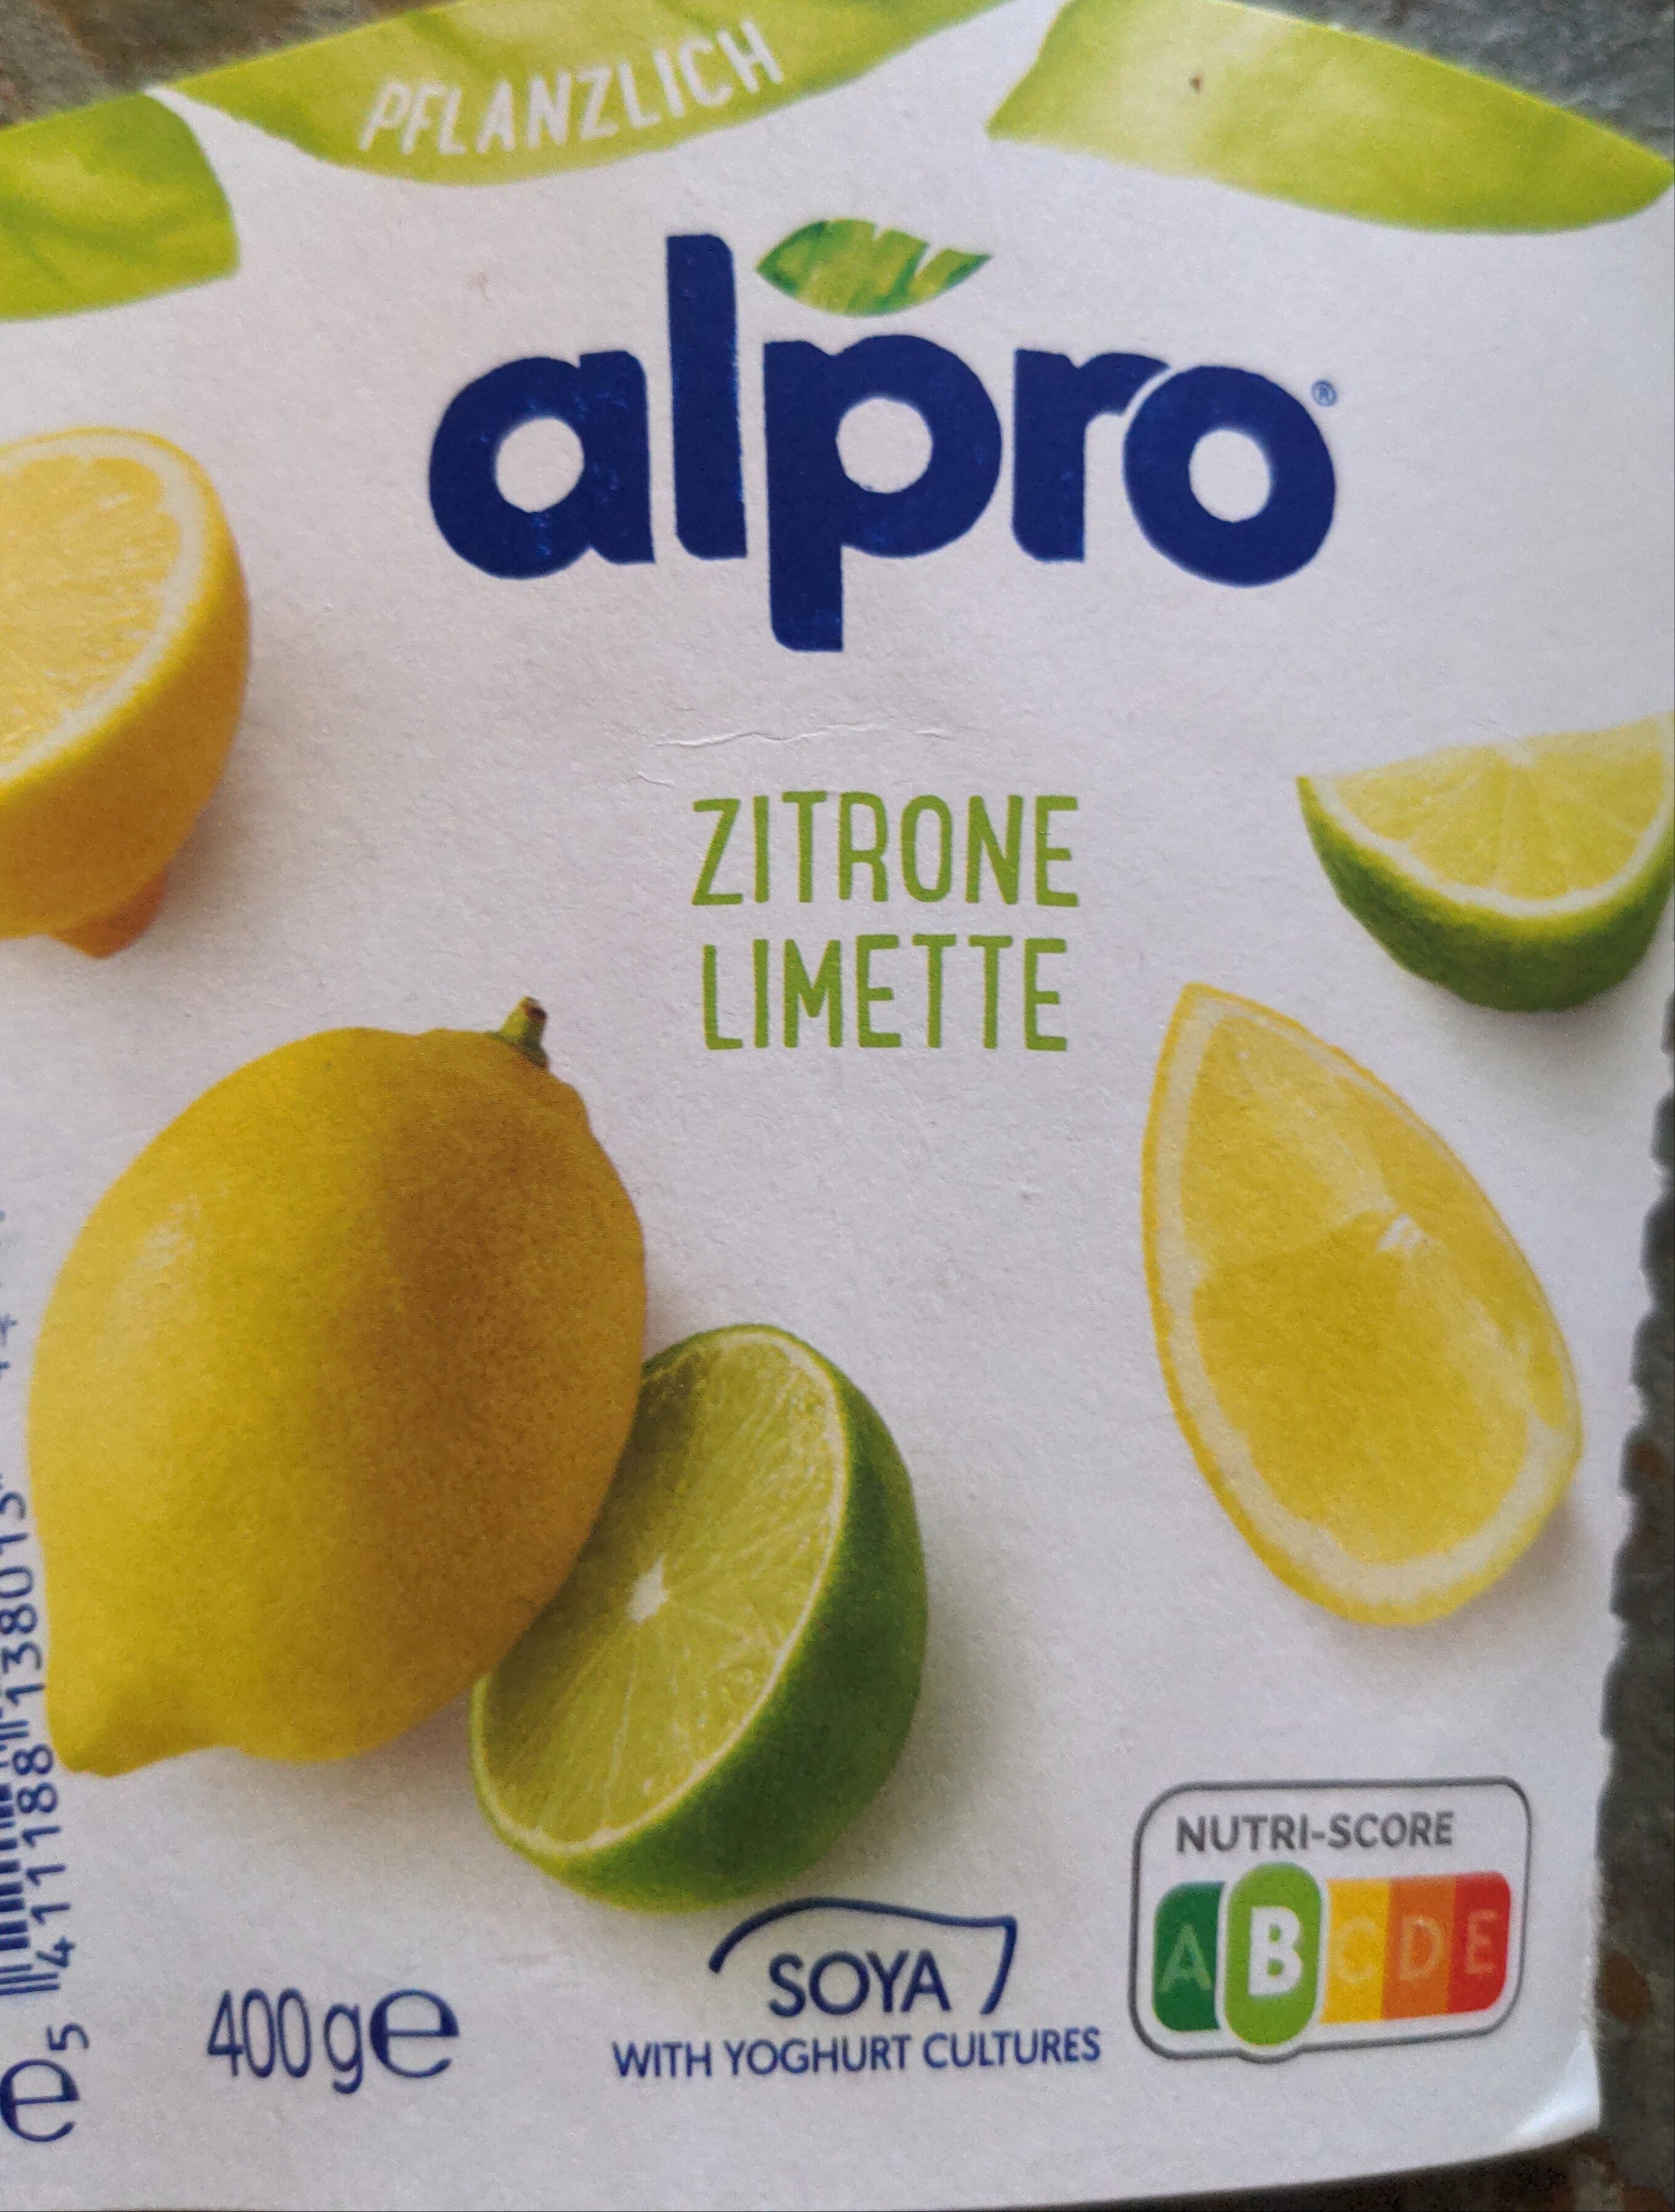 Alpro Zitrone Limette - Produkt - en